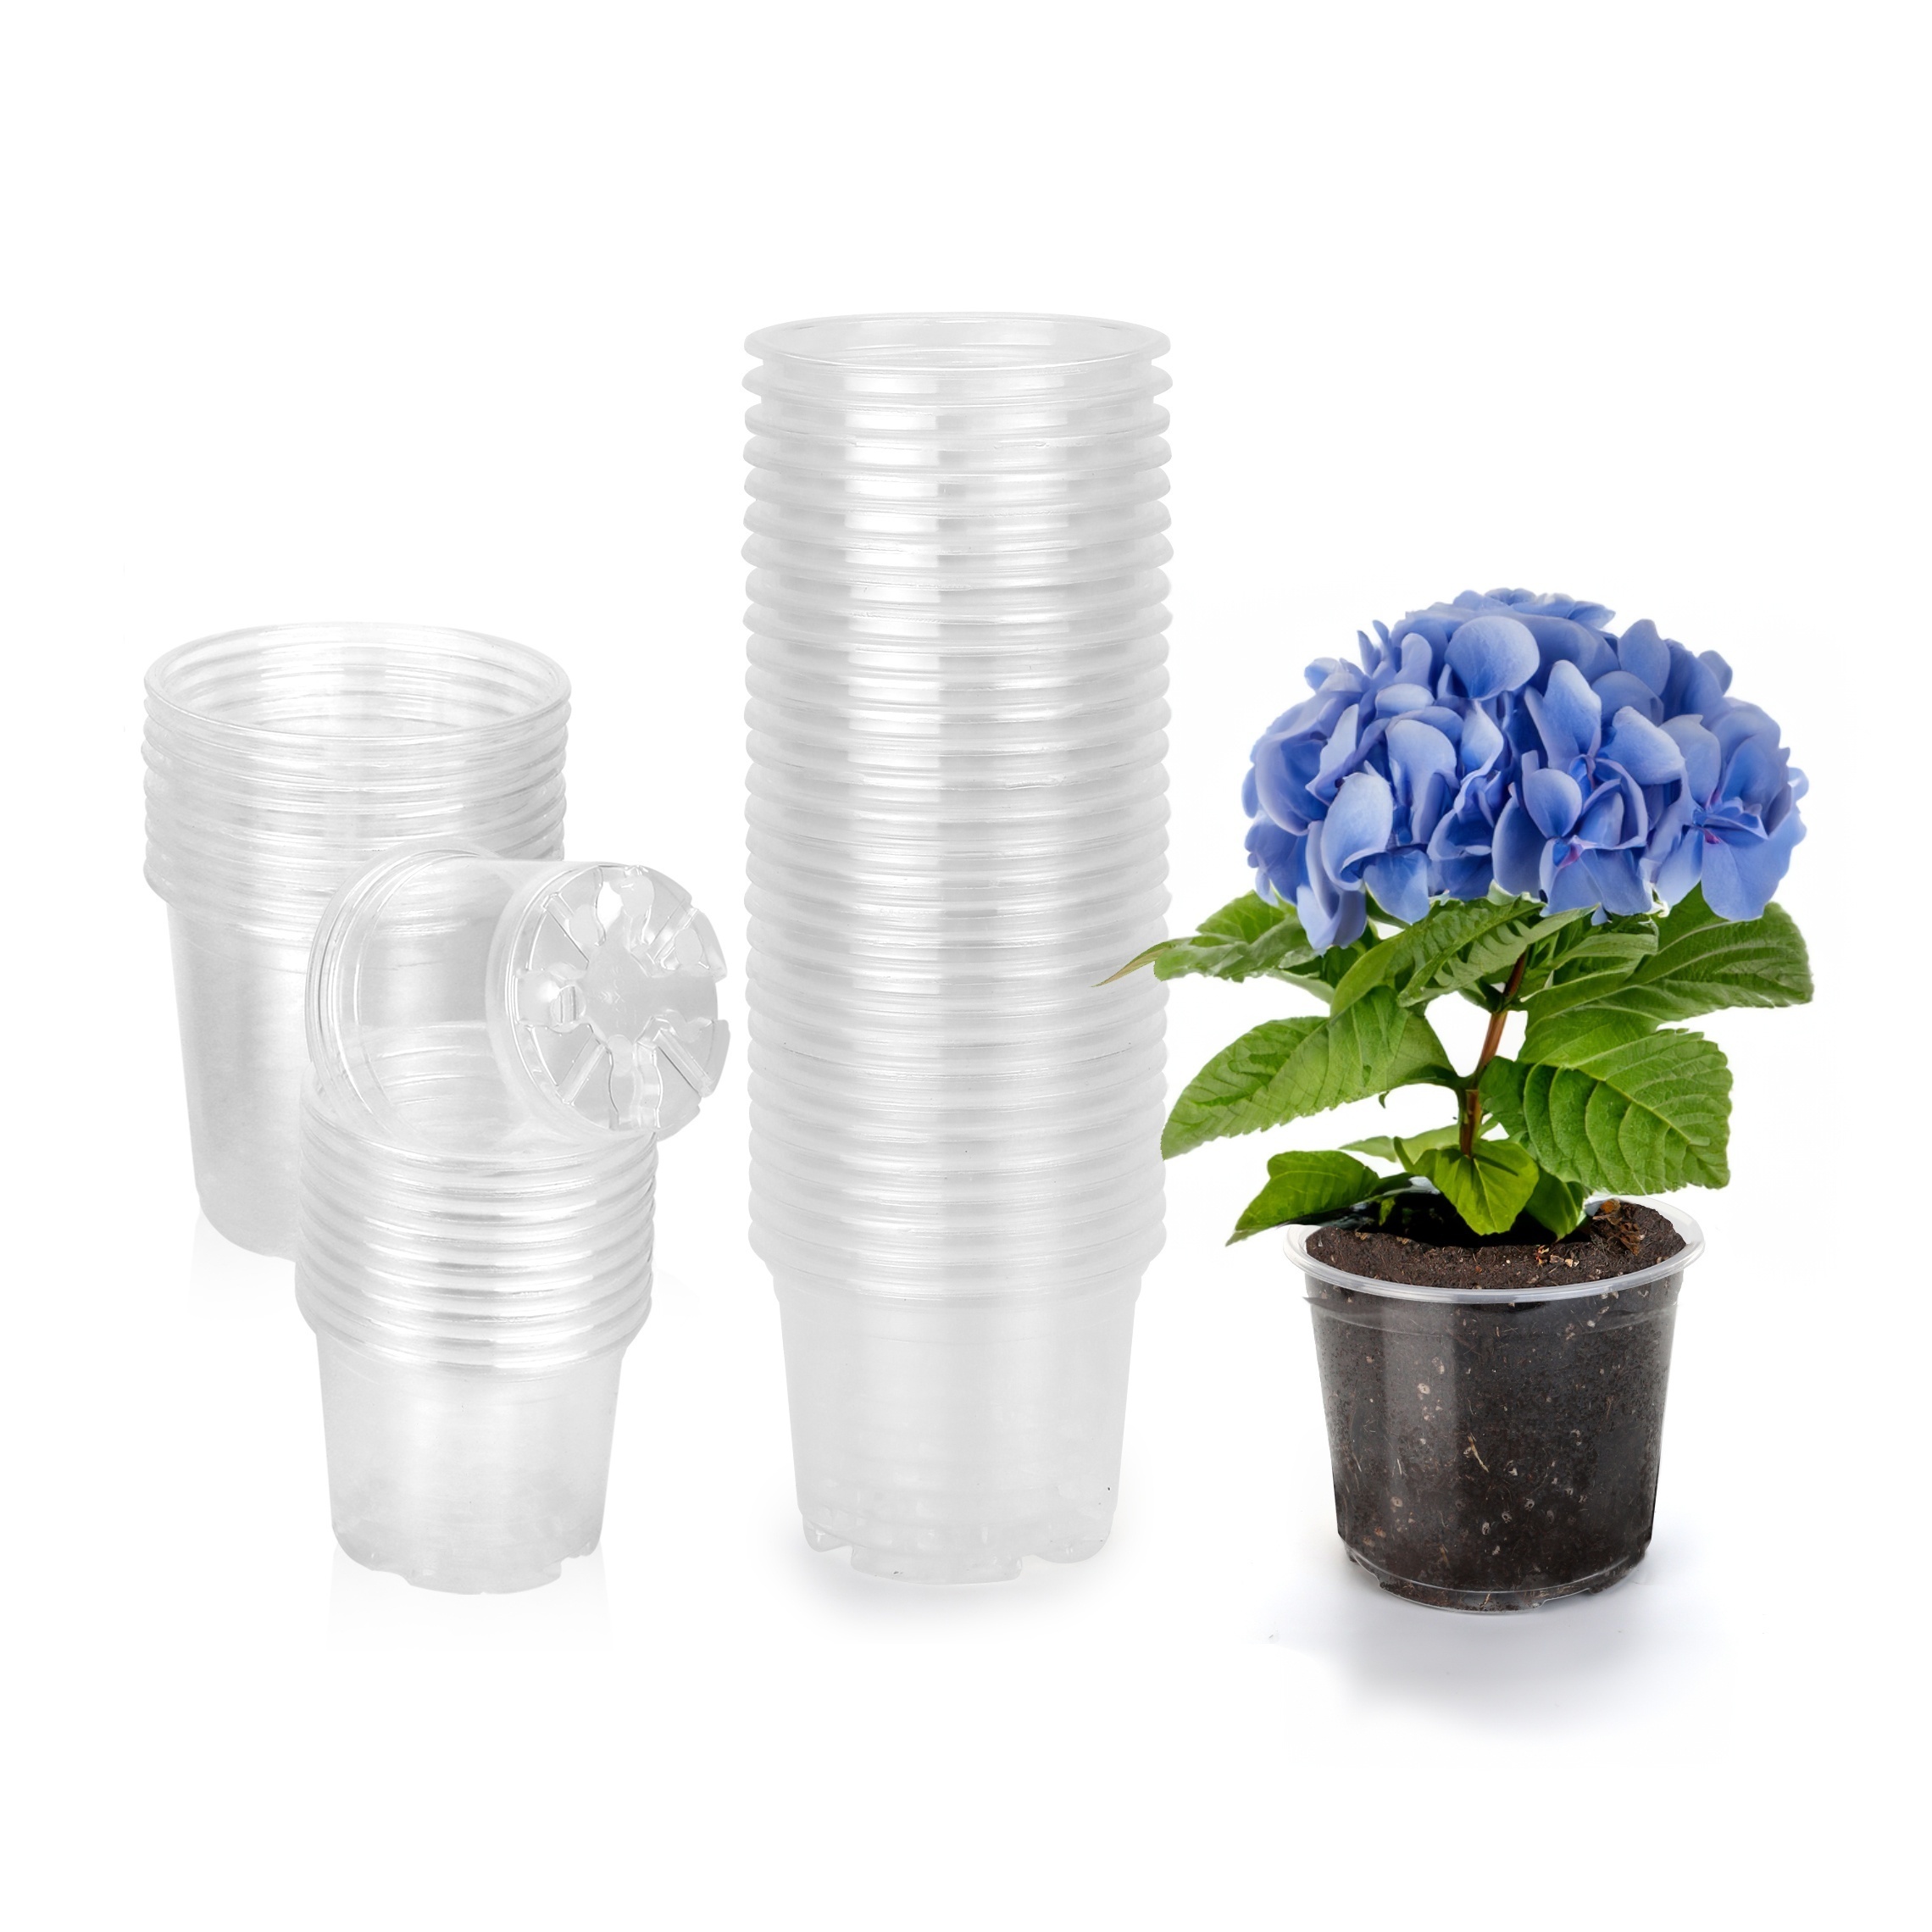 Vasi per orchidee in plastica trasparente da 10 pezzi fioriere per orchidee  traspiranti vasi per vivaio per piante da interno ed esterno